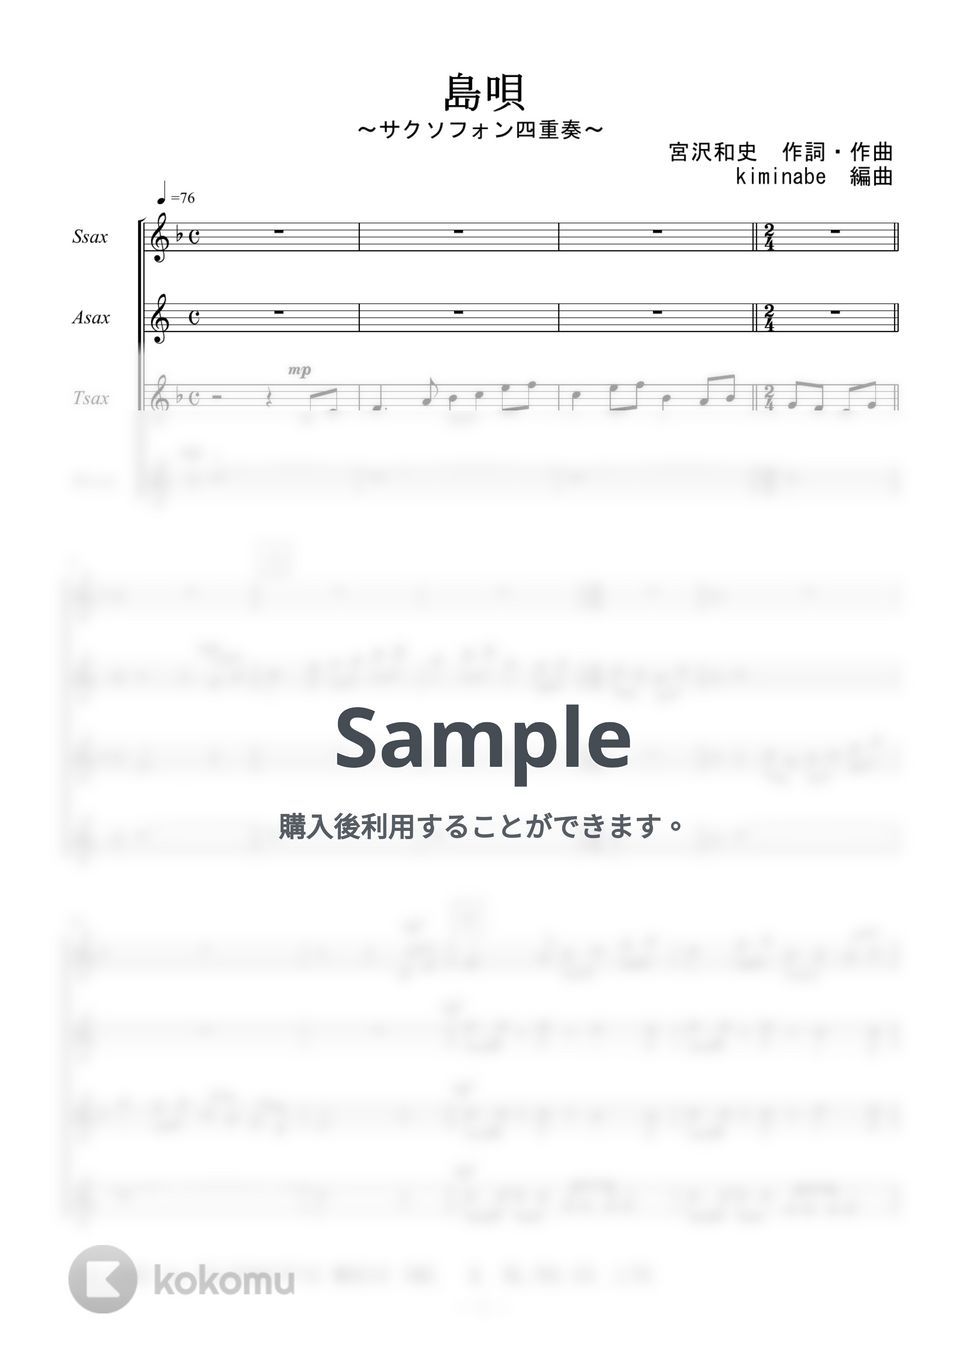 宮沢和史 - 島唄 (サクソフォン四重奏) by kiminabe